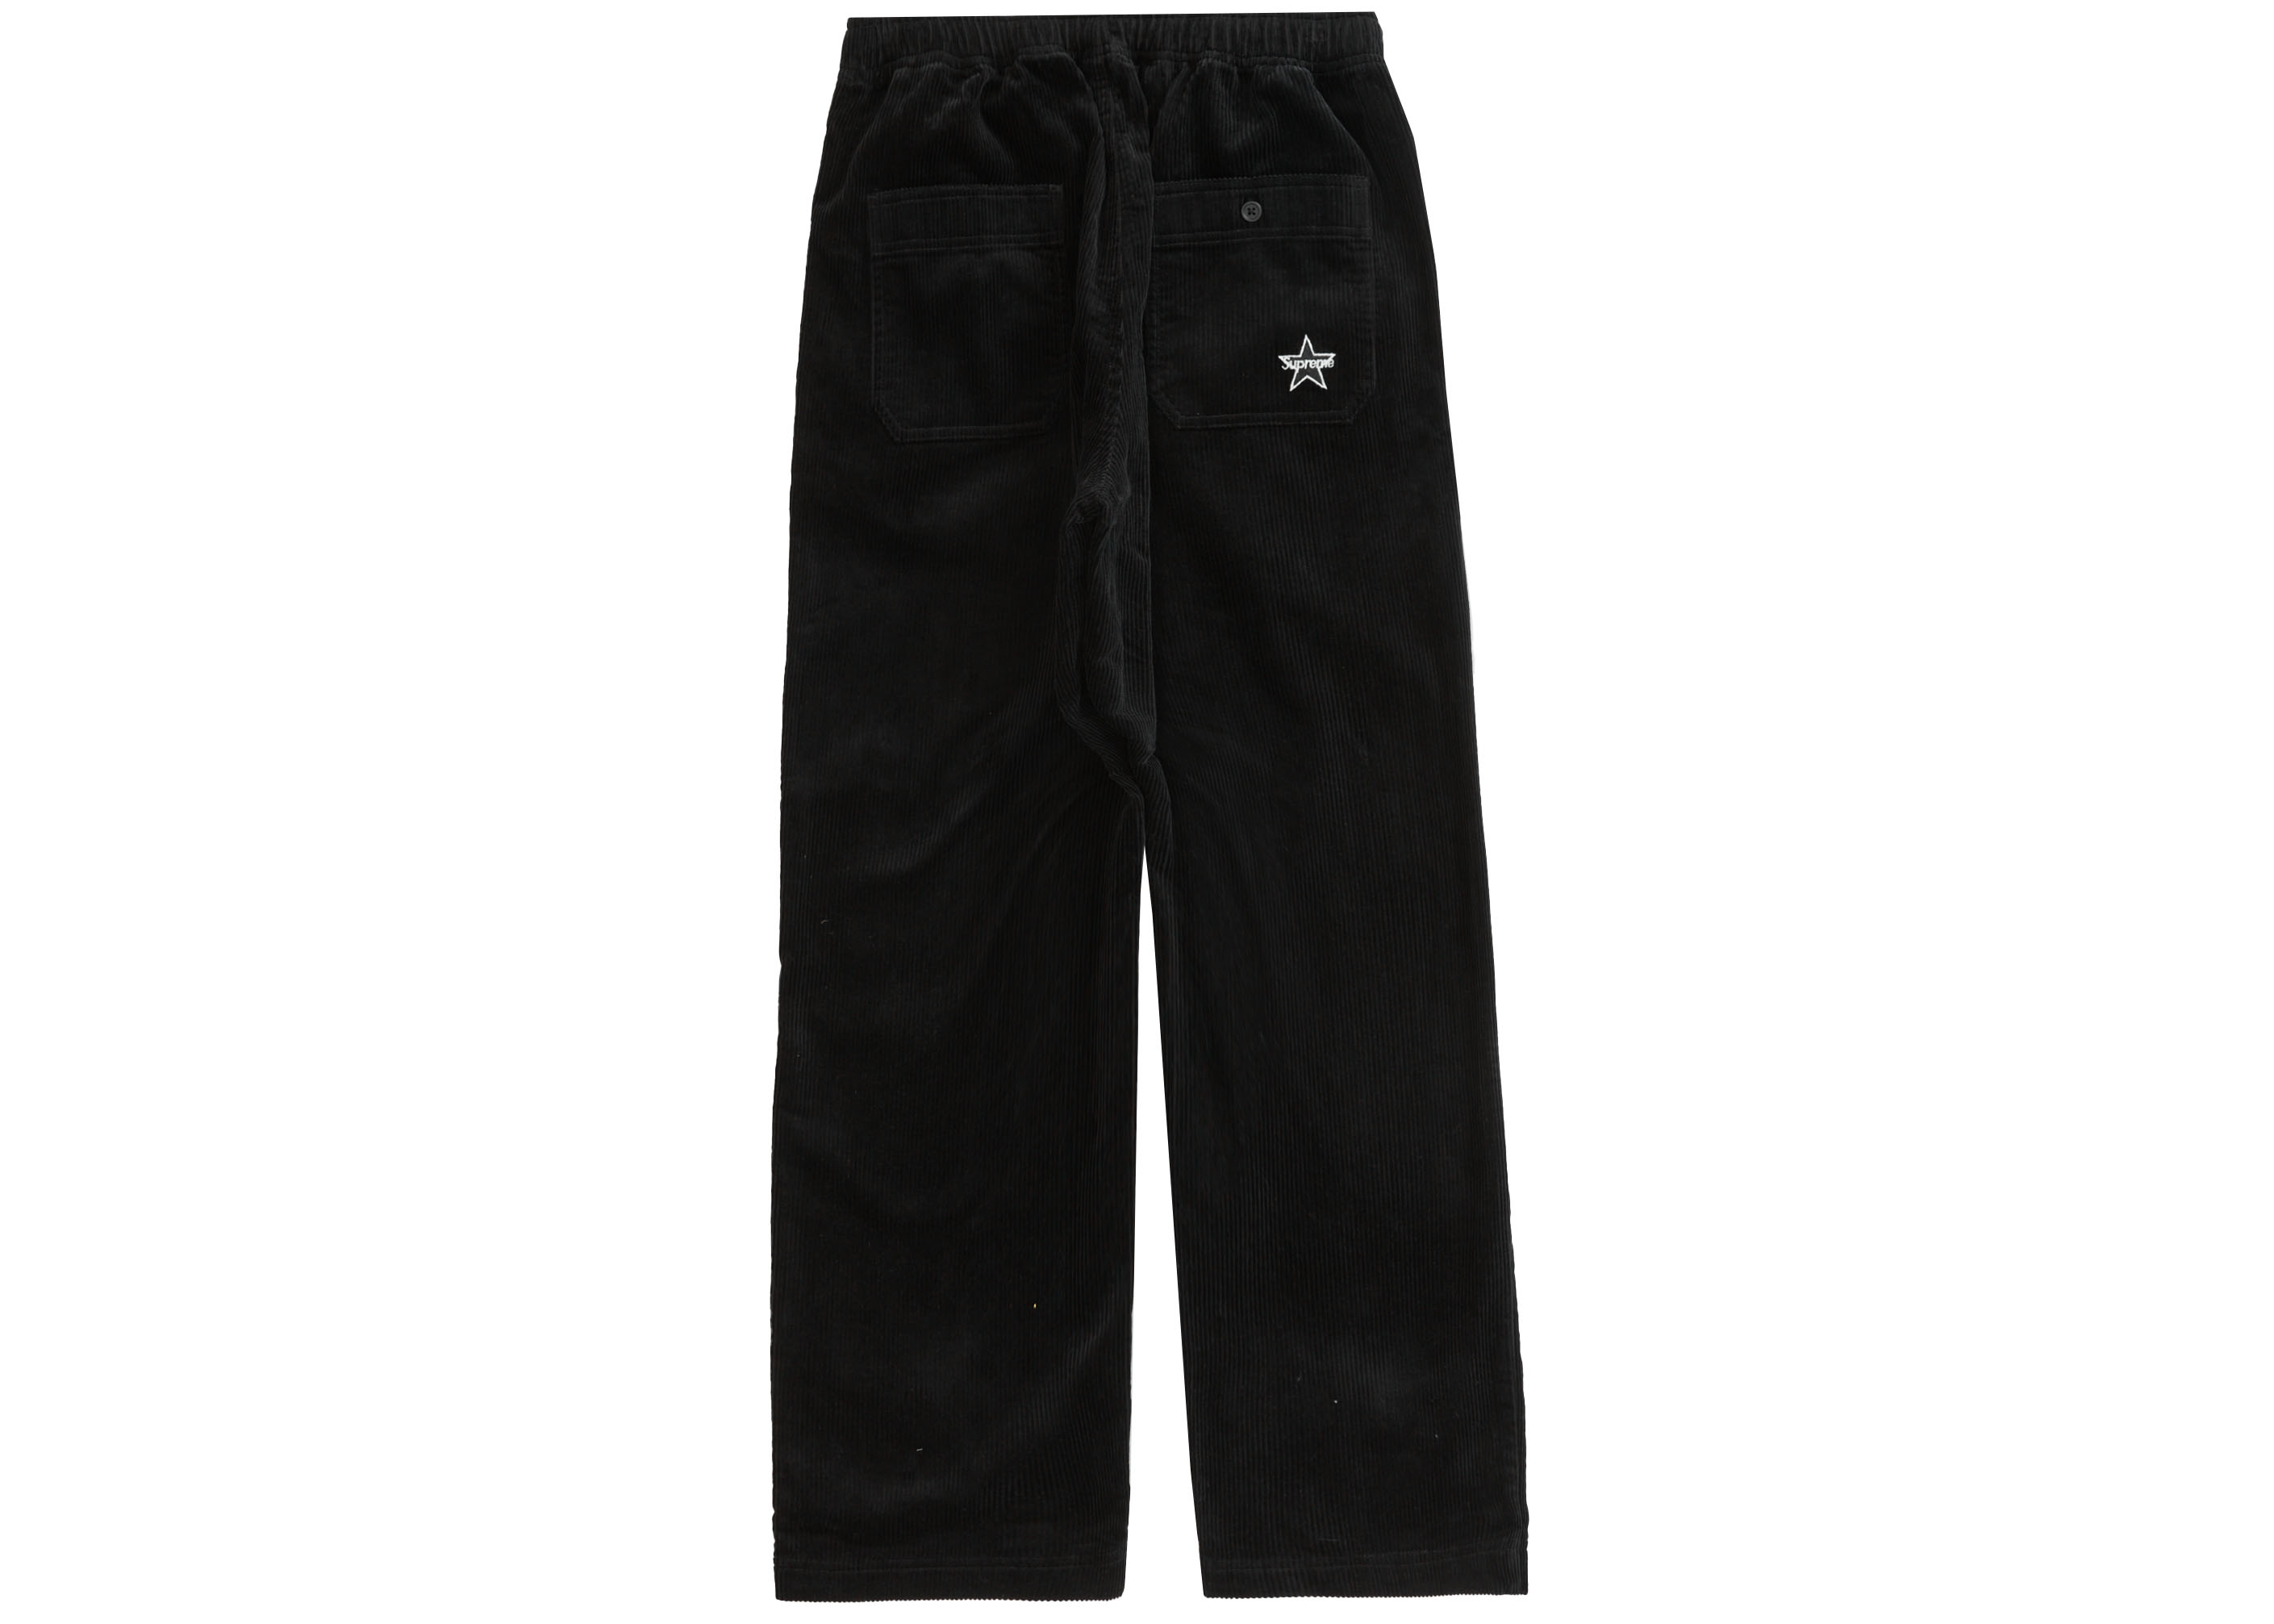 14,994円23FW Supreme Corduroy Skate Pant Black S